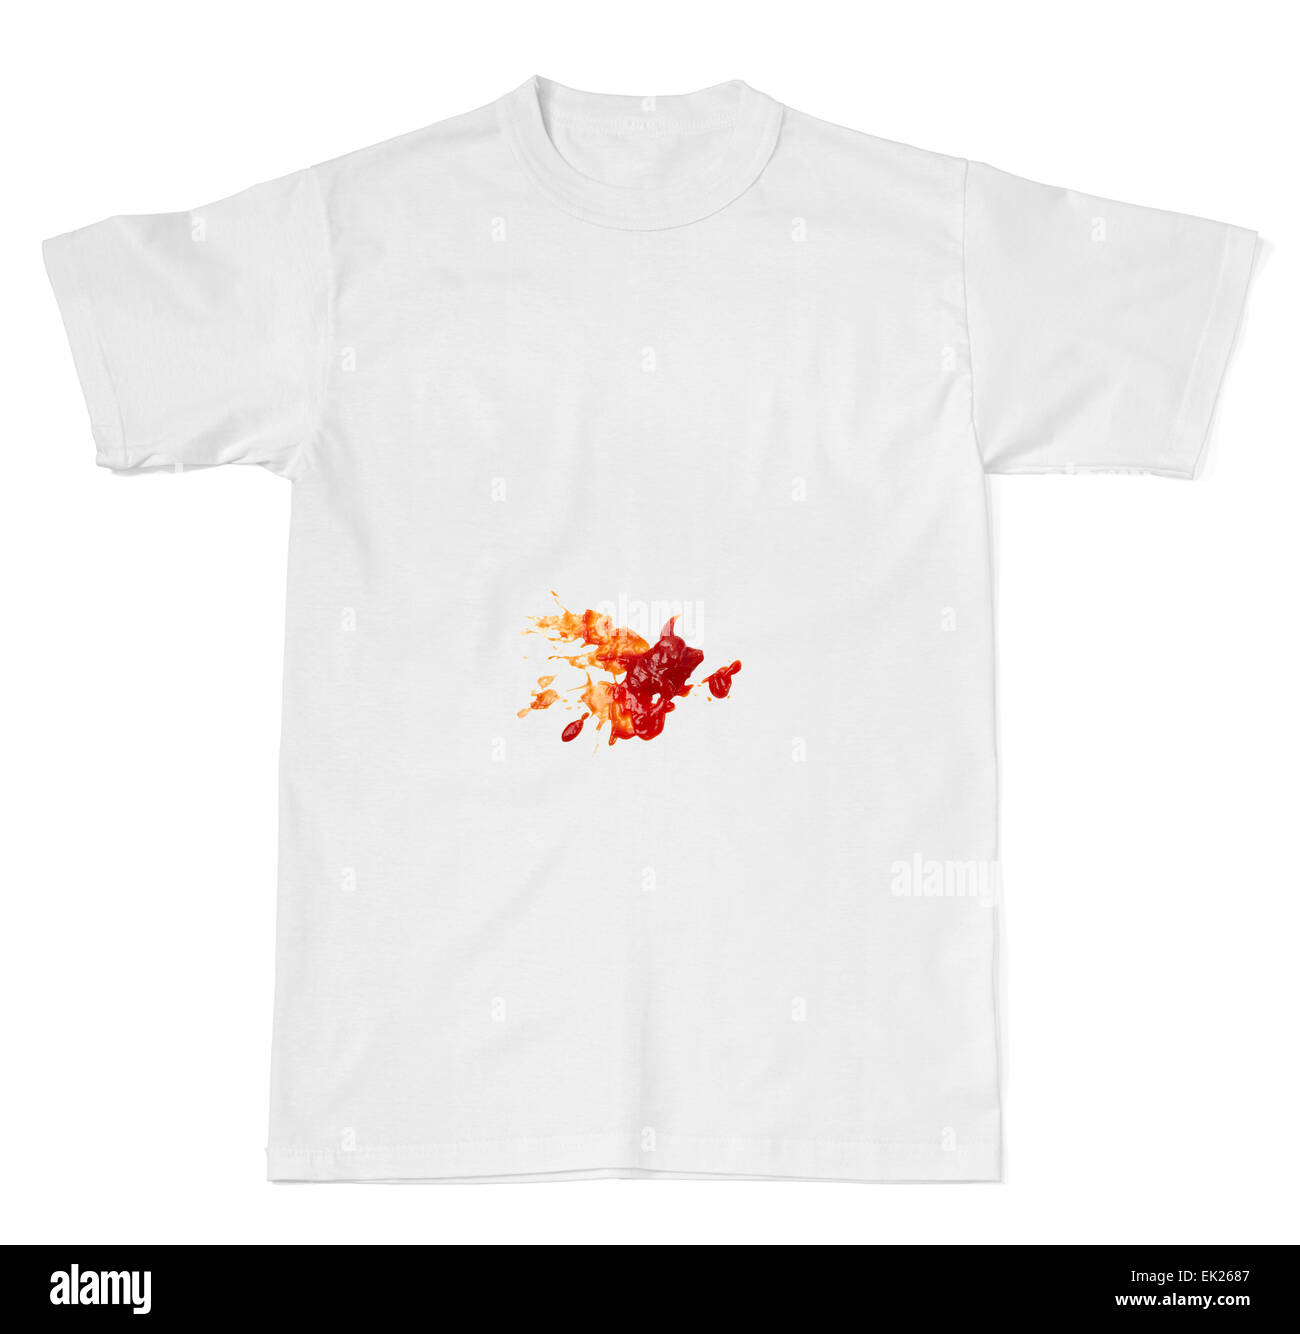 Food stain shirt immagini e fotografie stock ad alta risoluzione - Alamy